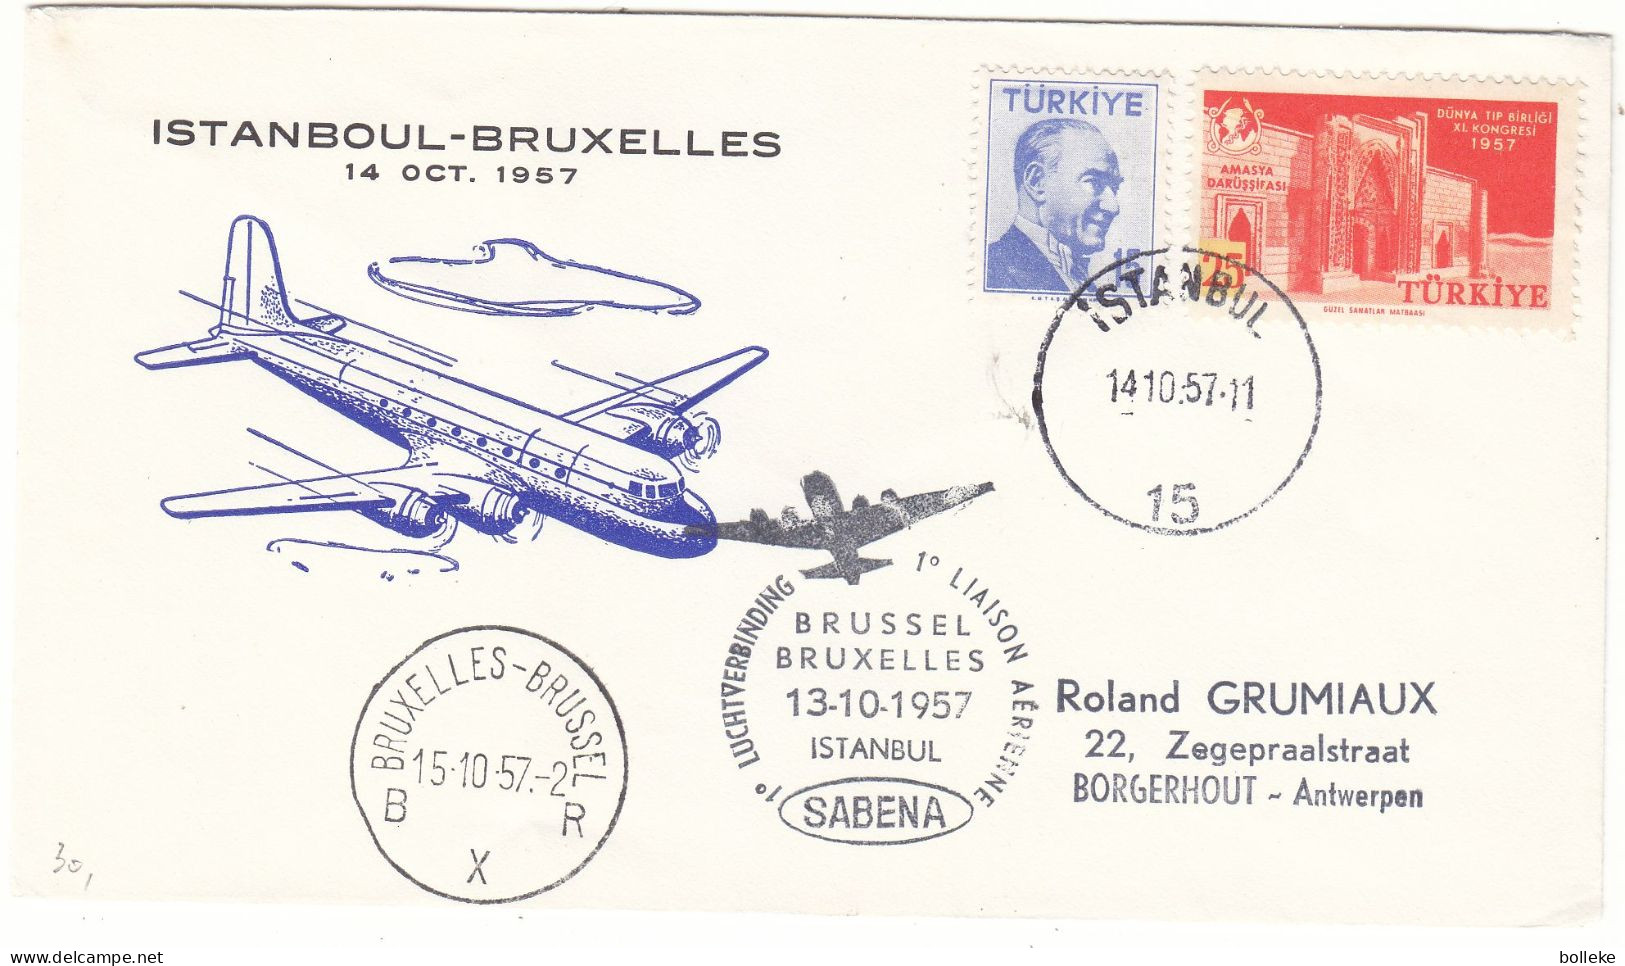 Turquie - Lettre De 1957 - Oblit Istanbul - 1 Er Vol SABENA Bruxelles Istanbul - - Covers & Documents